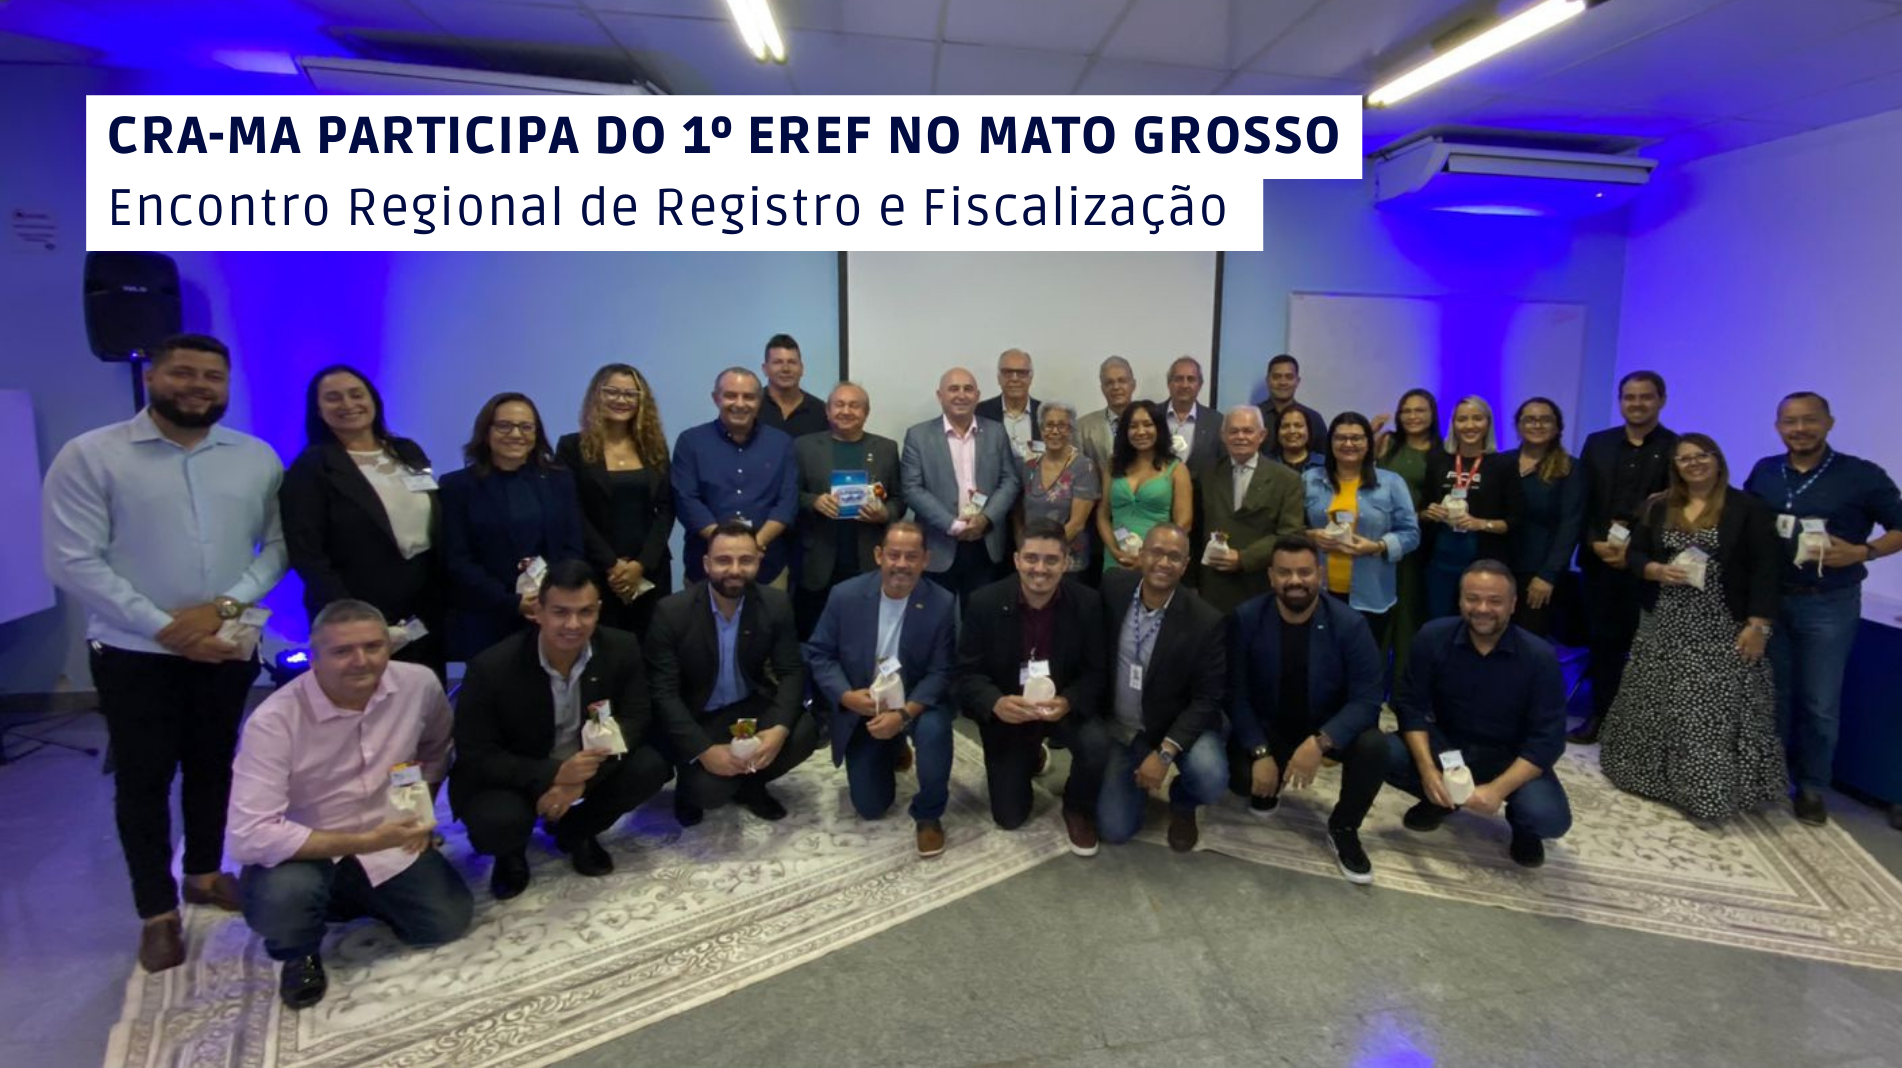 You are currently viewing CRA-MA participa de Encontro de Registro e Fiscalização no Mato Grosso